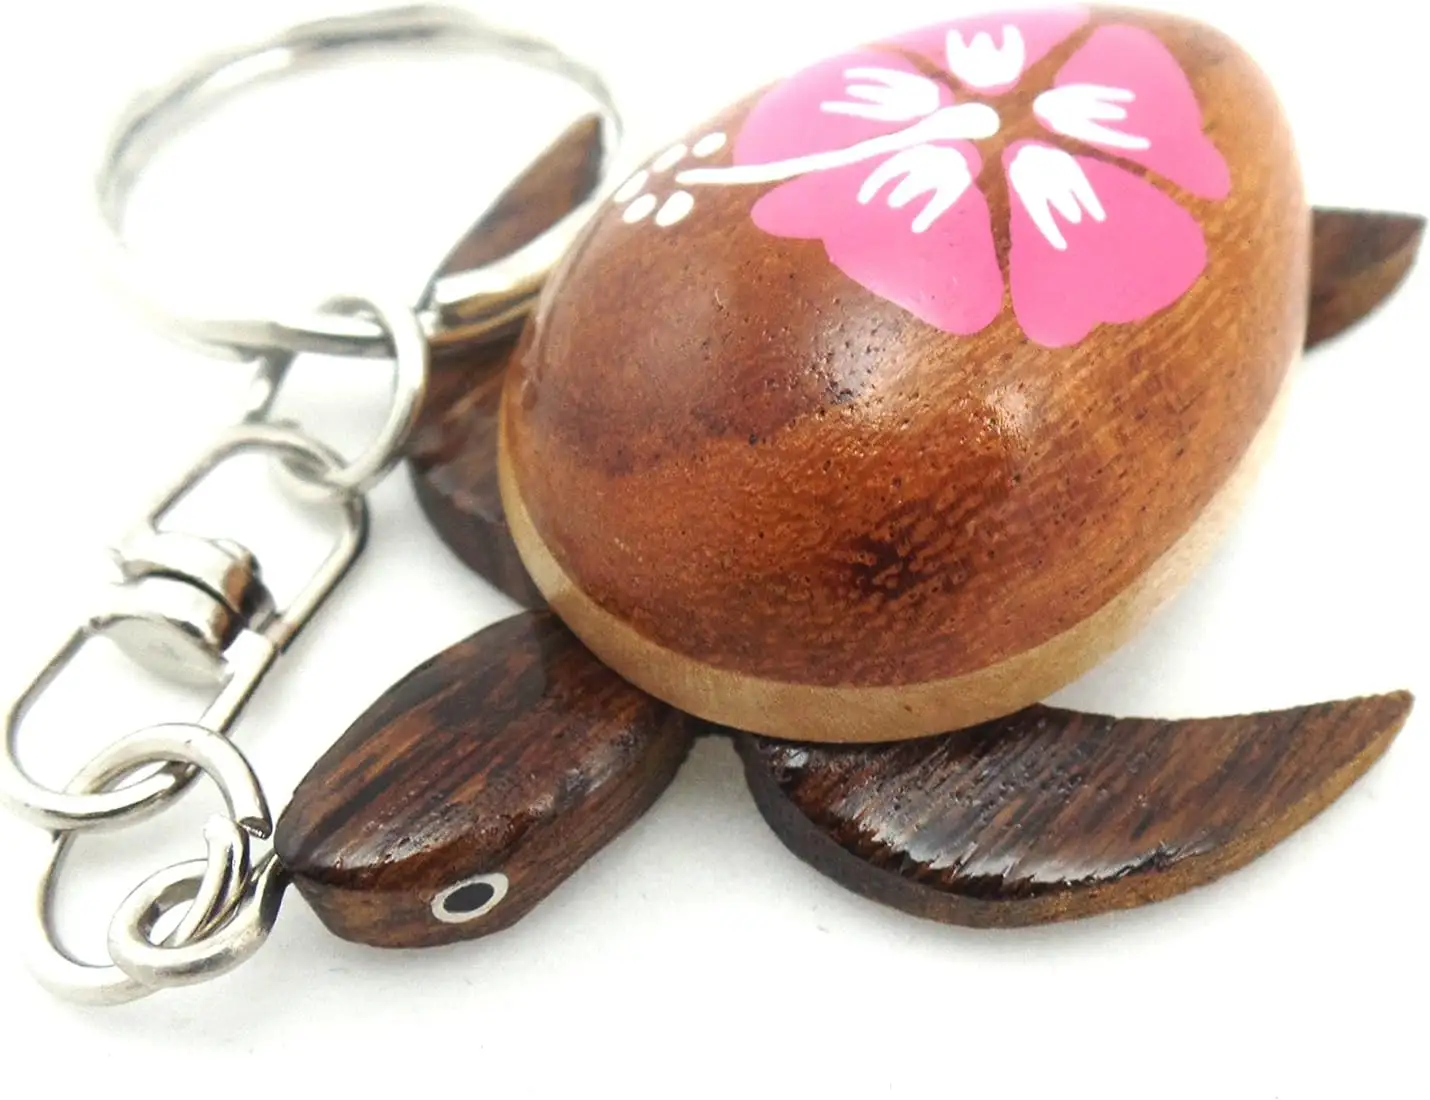 Großhandel billig ODM Einzigartige schöne Kokosnuss schale Anhänger Schlüssel bund Schlüssel anhänger für Home Key Geburtstags geschenk Made in Vietnam